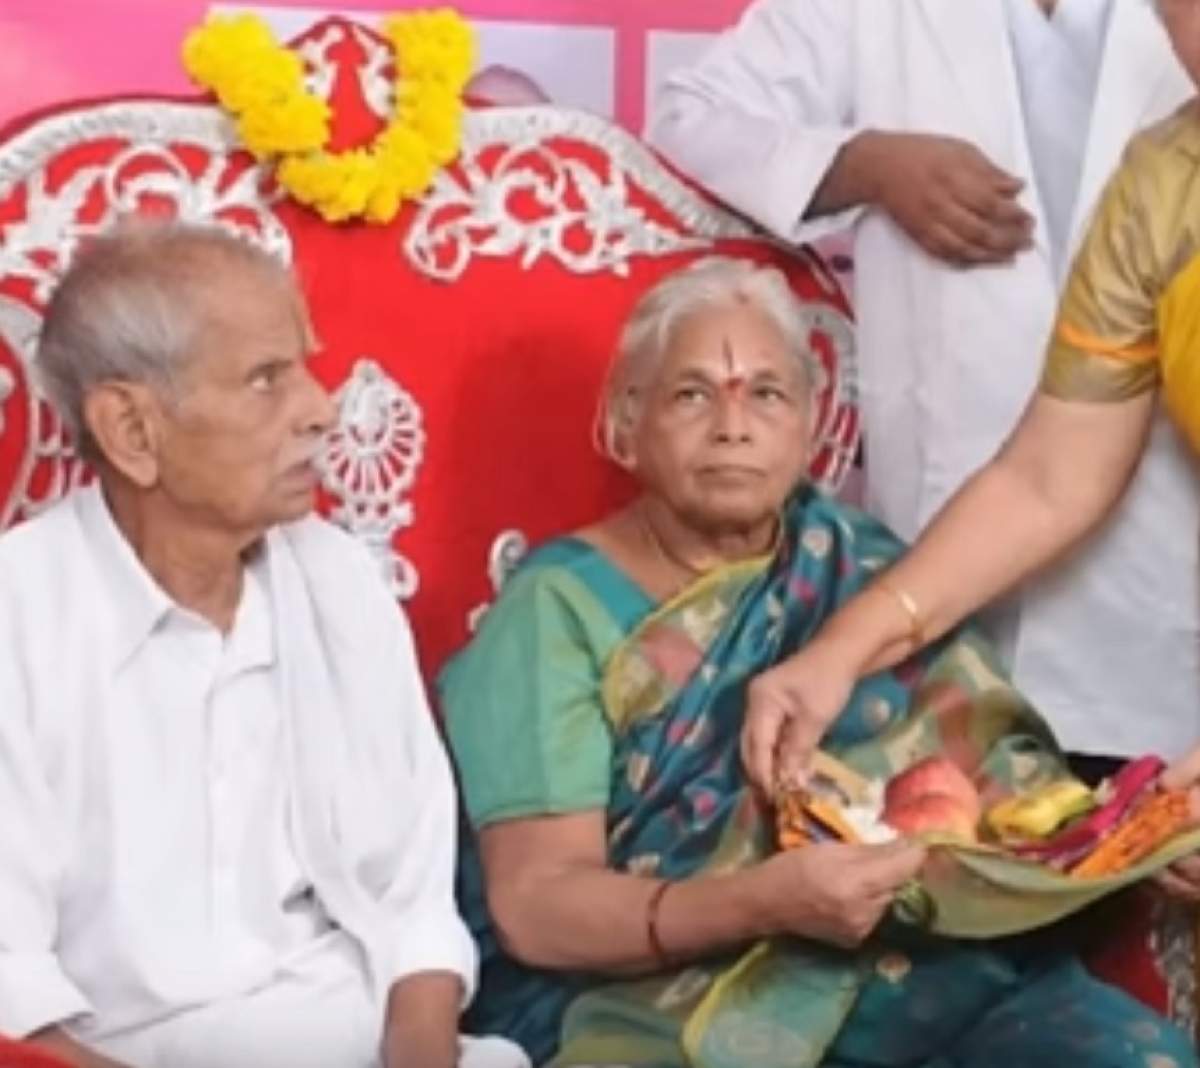 Soţul femeii care a adus pe lume gemeni la 74 de ani a făcut infarct, la o zi după ce a devenit tătic